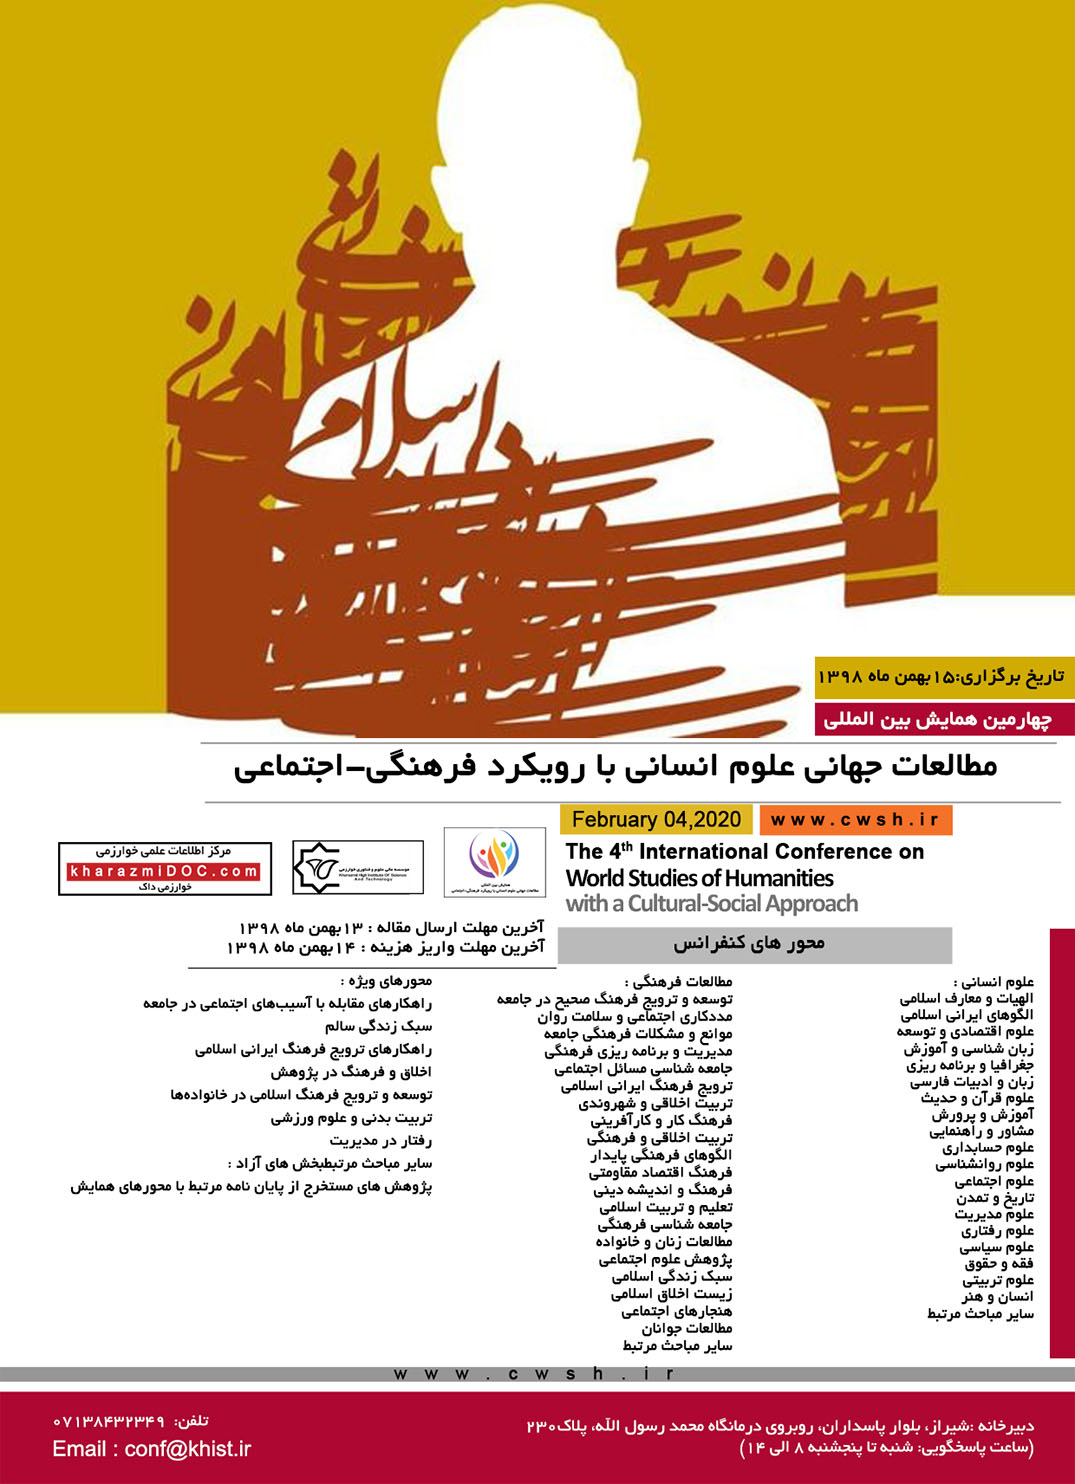 پوستر چهارمین همایش بین المللی مطالعات جهانی علوم انسانی با رویکرد فرهنگی-اجتماعی